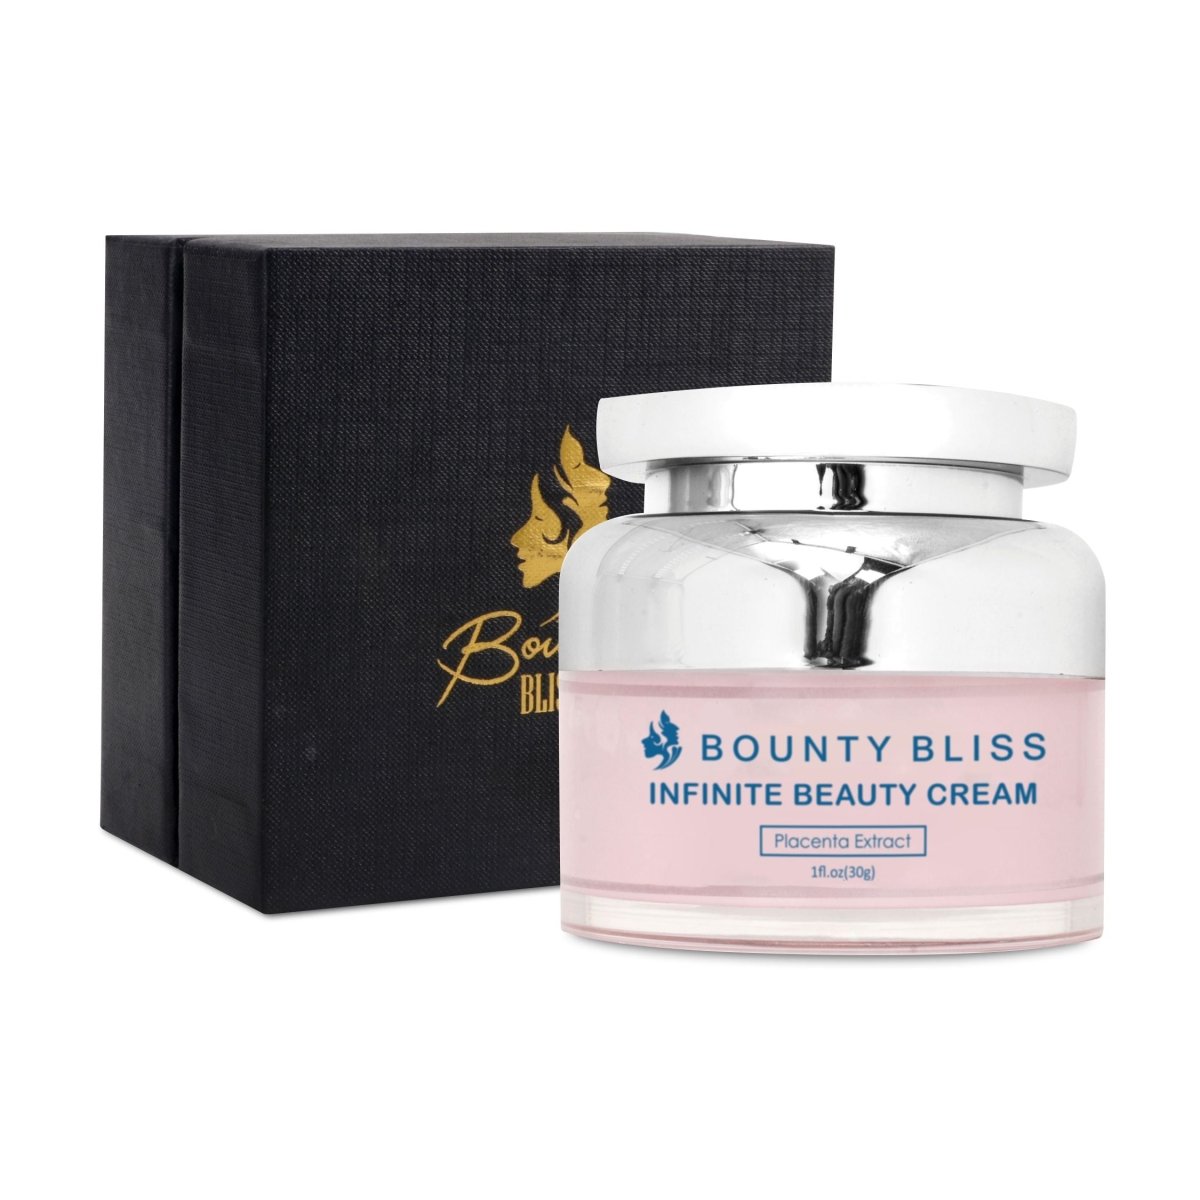 Bounty Bliss Infinite Beauty Cream-30g - Kreate- Face